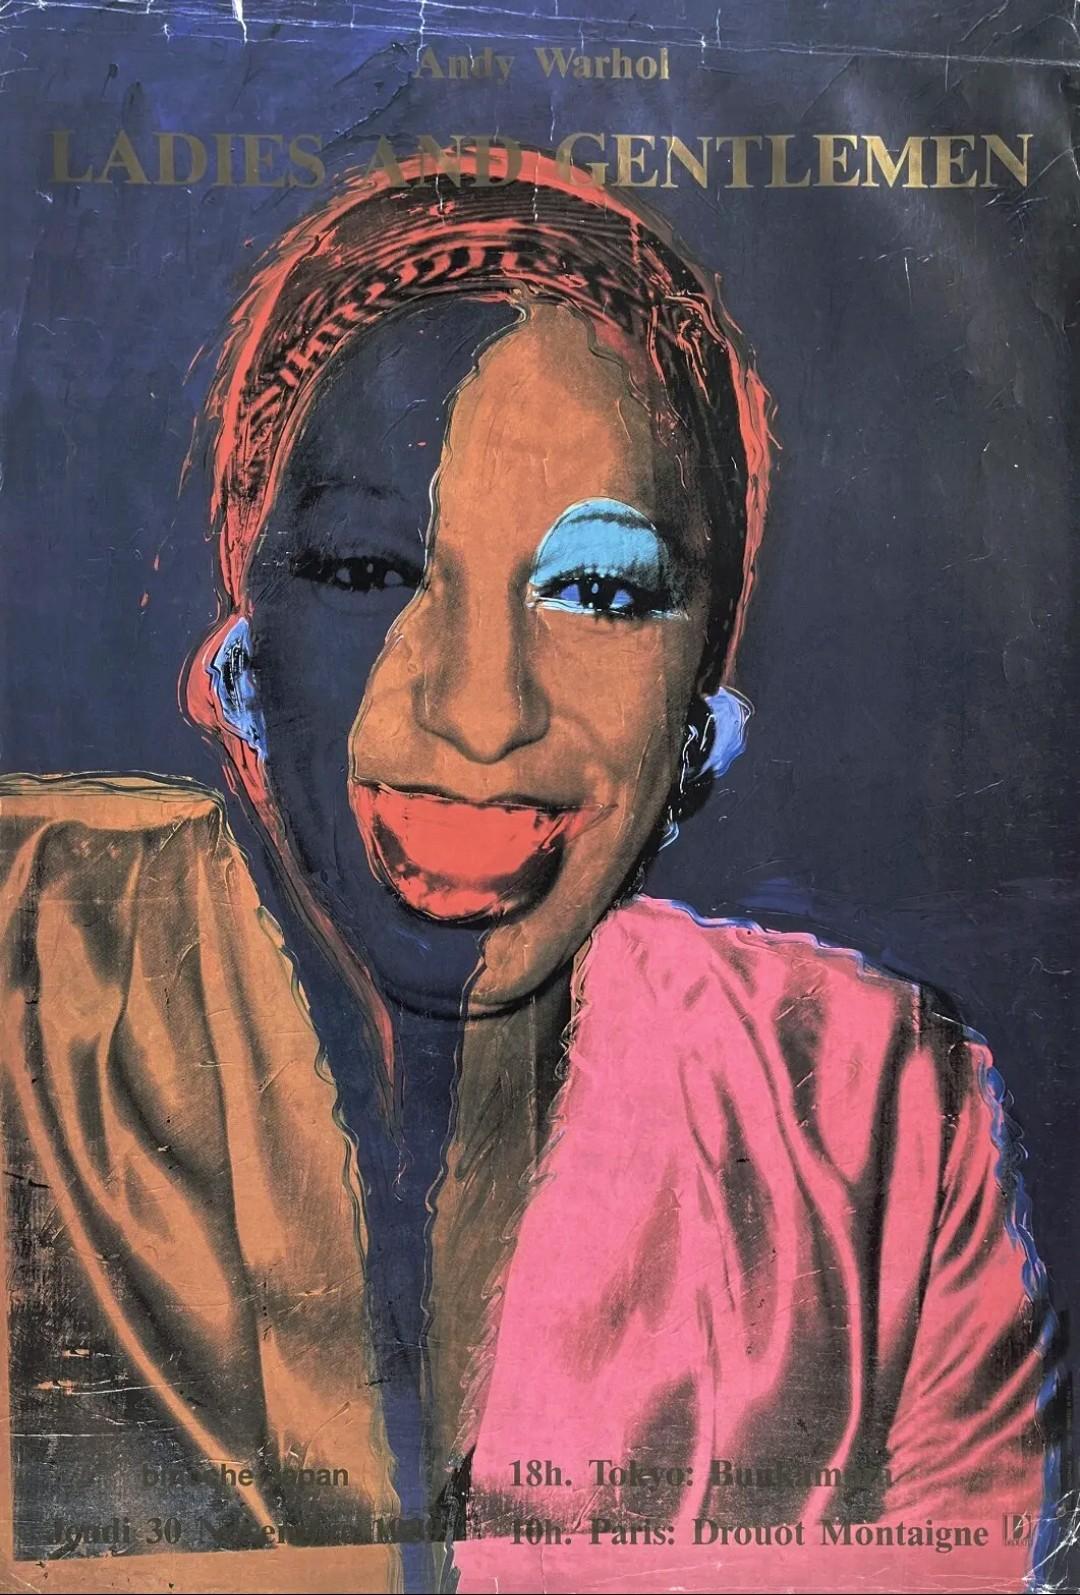 Affiche de l'exposition Ladies and Gentlemen (Portrait de Wilhelmina Ross) (1989)
Andy Warhol Vintage 1989 Pop Art Lithograph Print Framed Paris Exhibition Poster " Ladies and Gentlemen ( Wilhelmina Ross ) " 1975
Cette lithographie d'Andy Warhol,